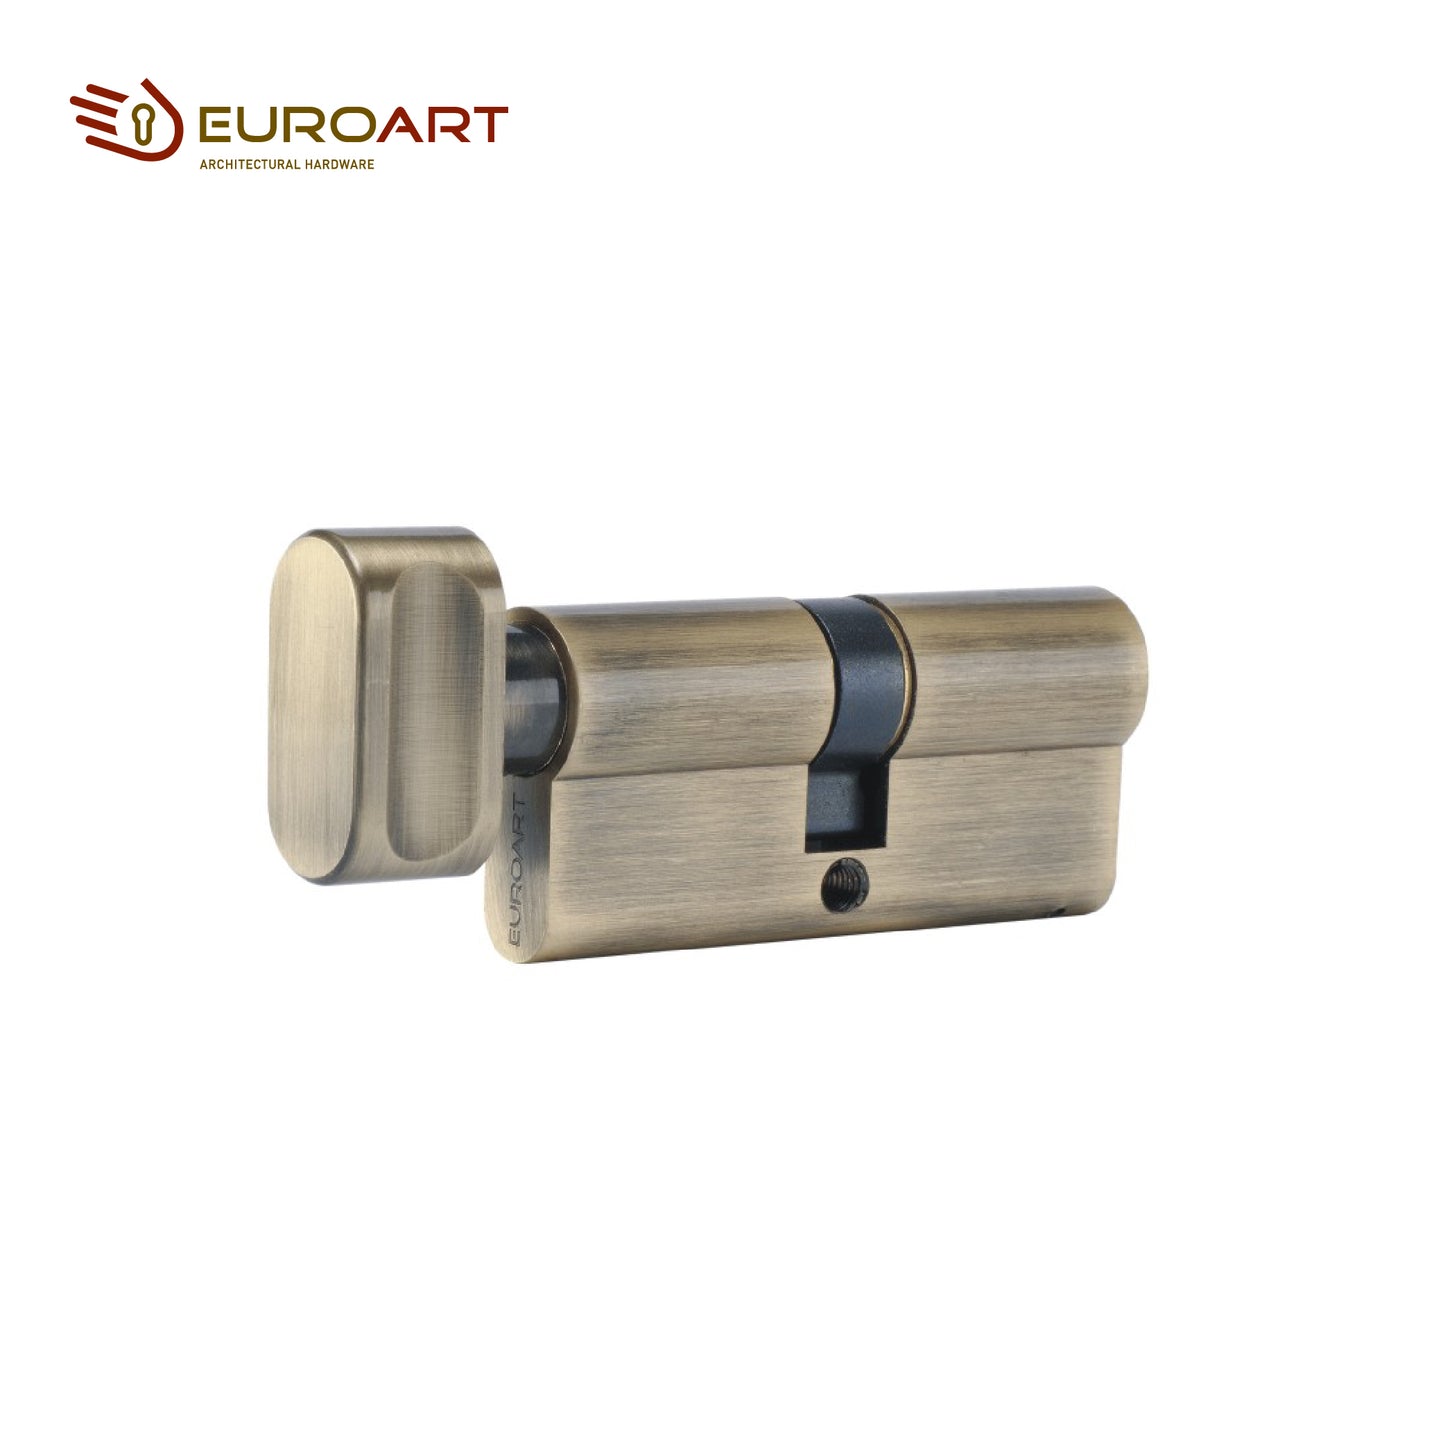 EuroArt Turn & Key Cylinder With 3 Keys , Size 80mm - CYD380SN